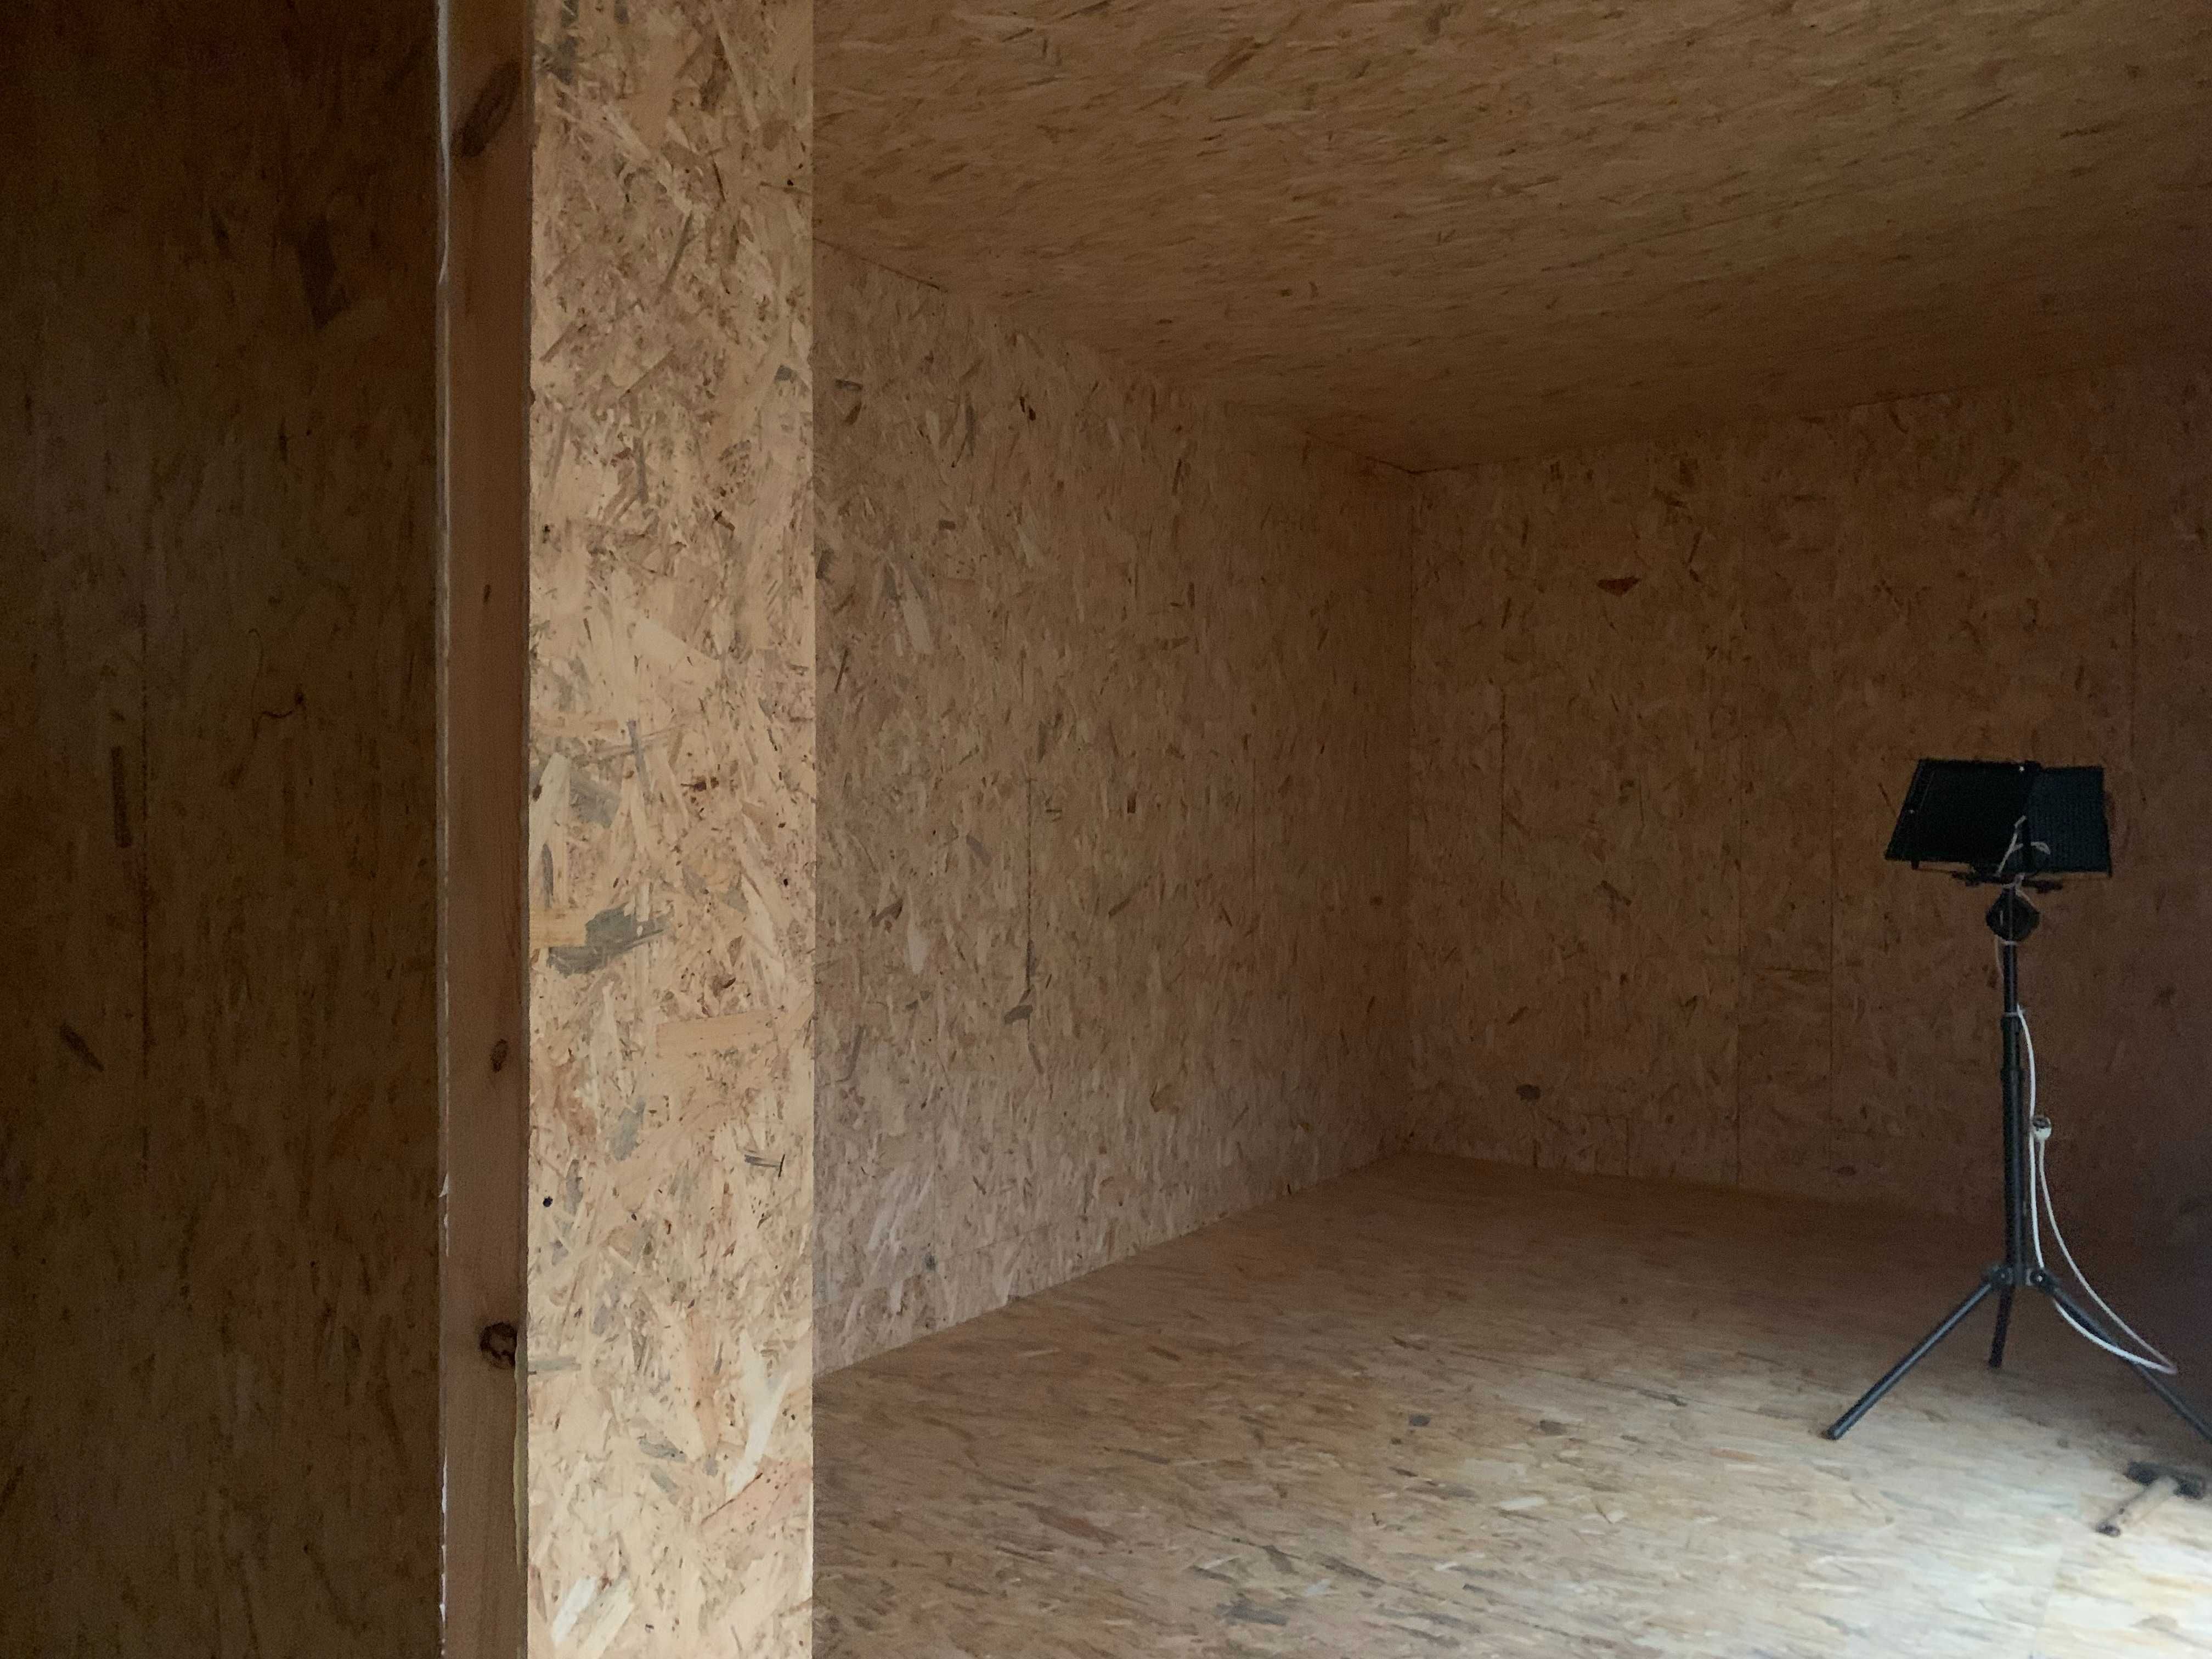 Mobilny domek szkieletowy całoroczny 32 m2 PROMOCJA dostępny ocieplony